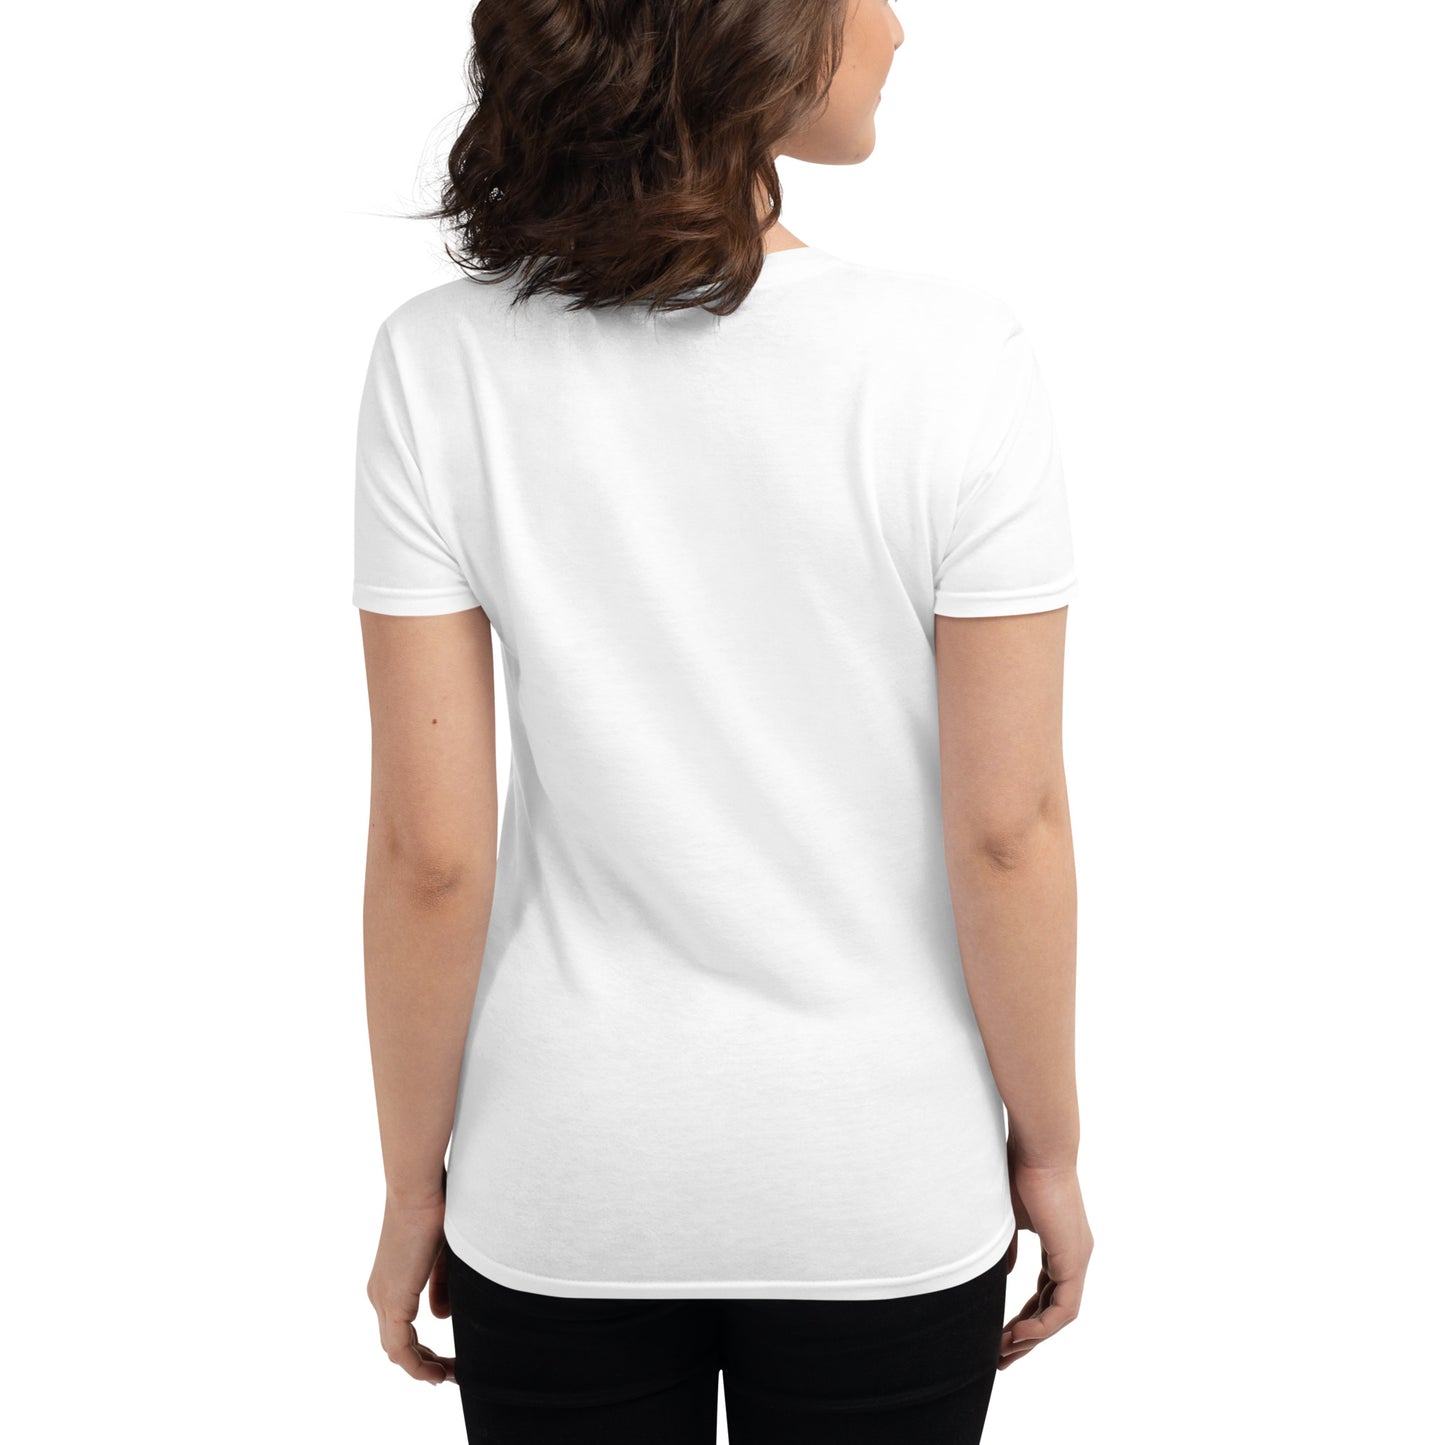 Ageless Fit Freak Women's Short Sleeve T-shirt